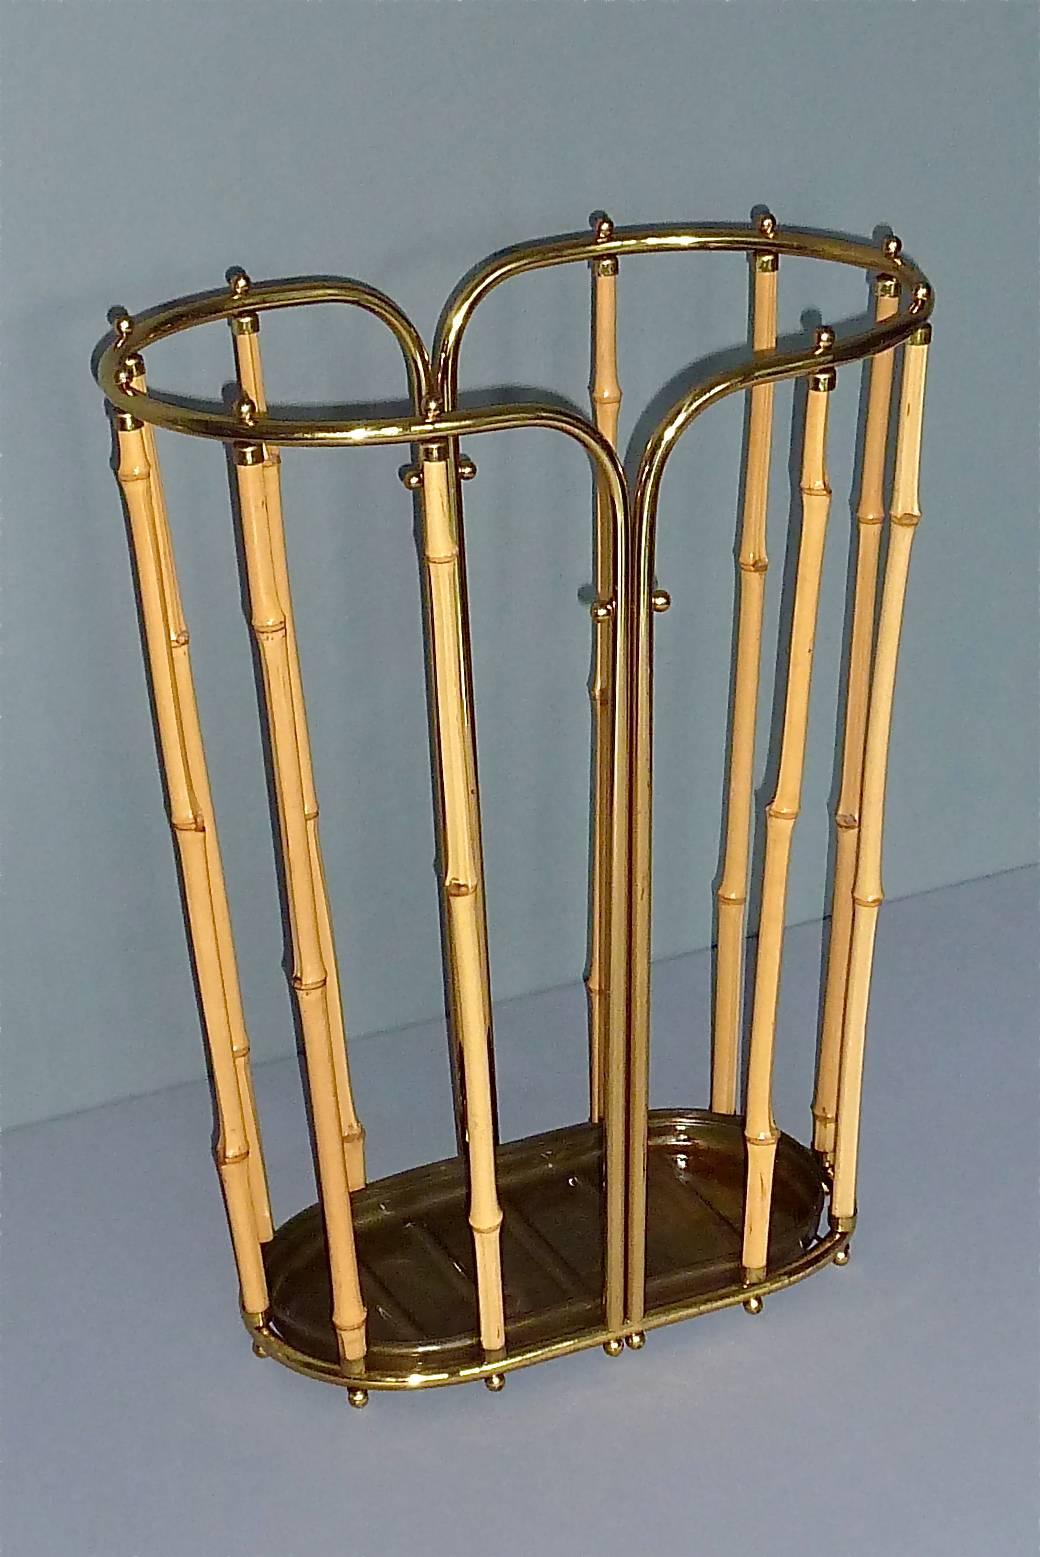 1950s Austrian Modernist Umbrella Stand Brass Bamboo, Josef Frank, Auböck Style 5